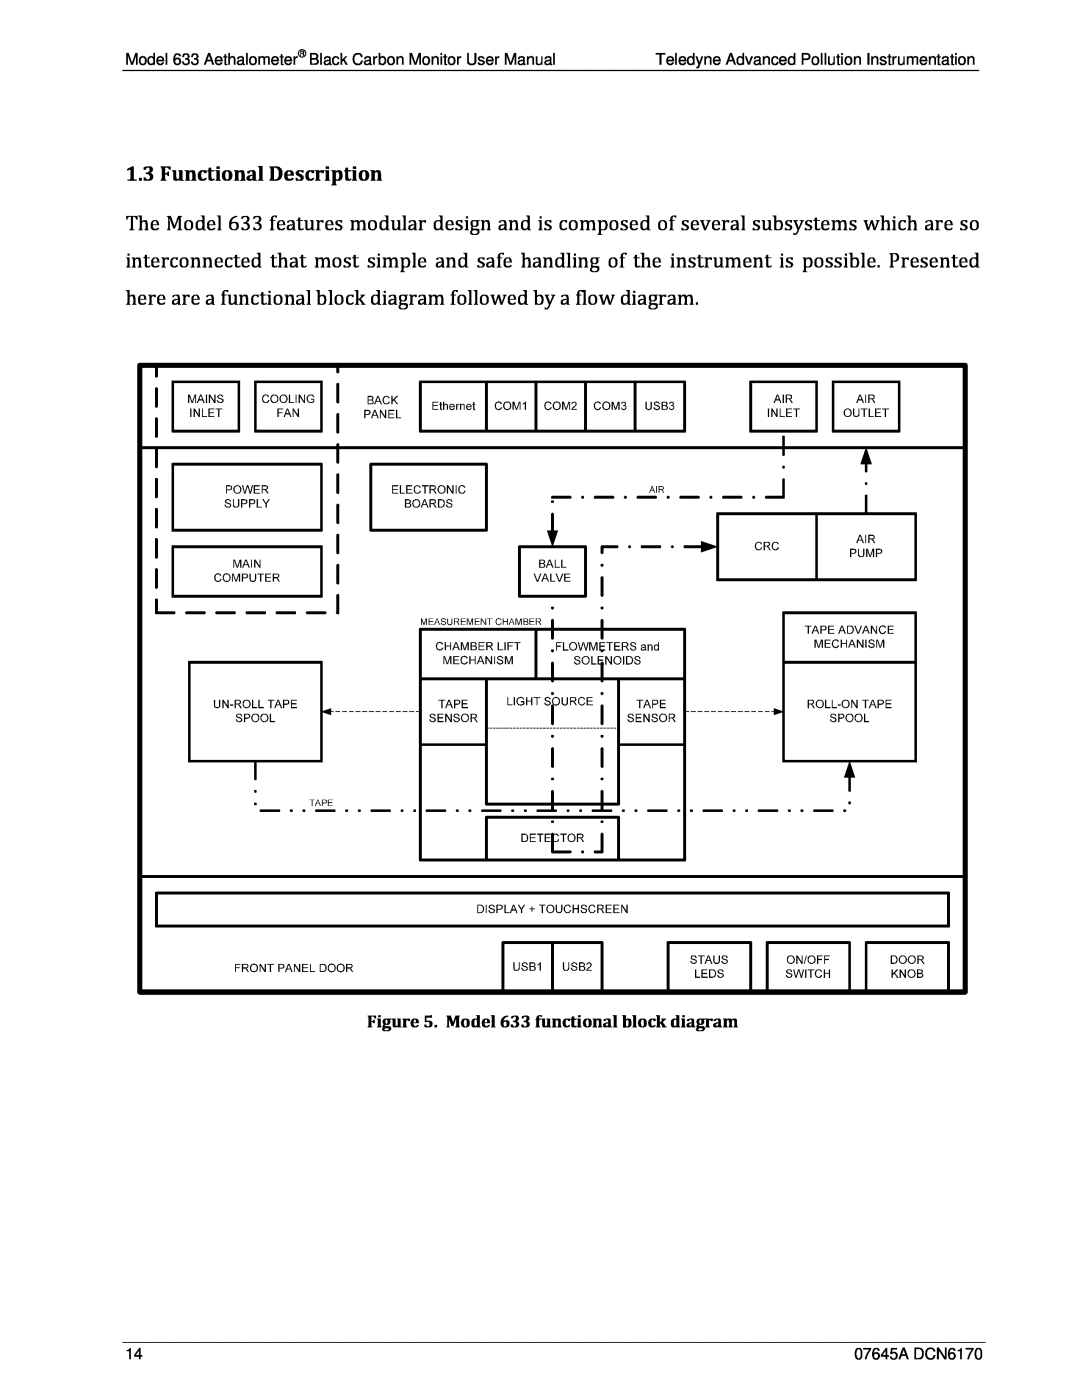 Teledyne user manual Functional Description, Model 633 functional block diagram 